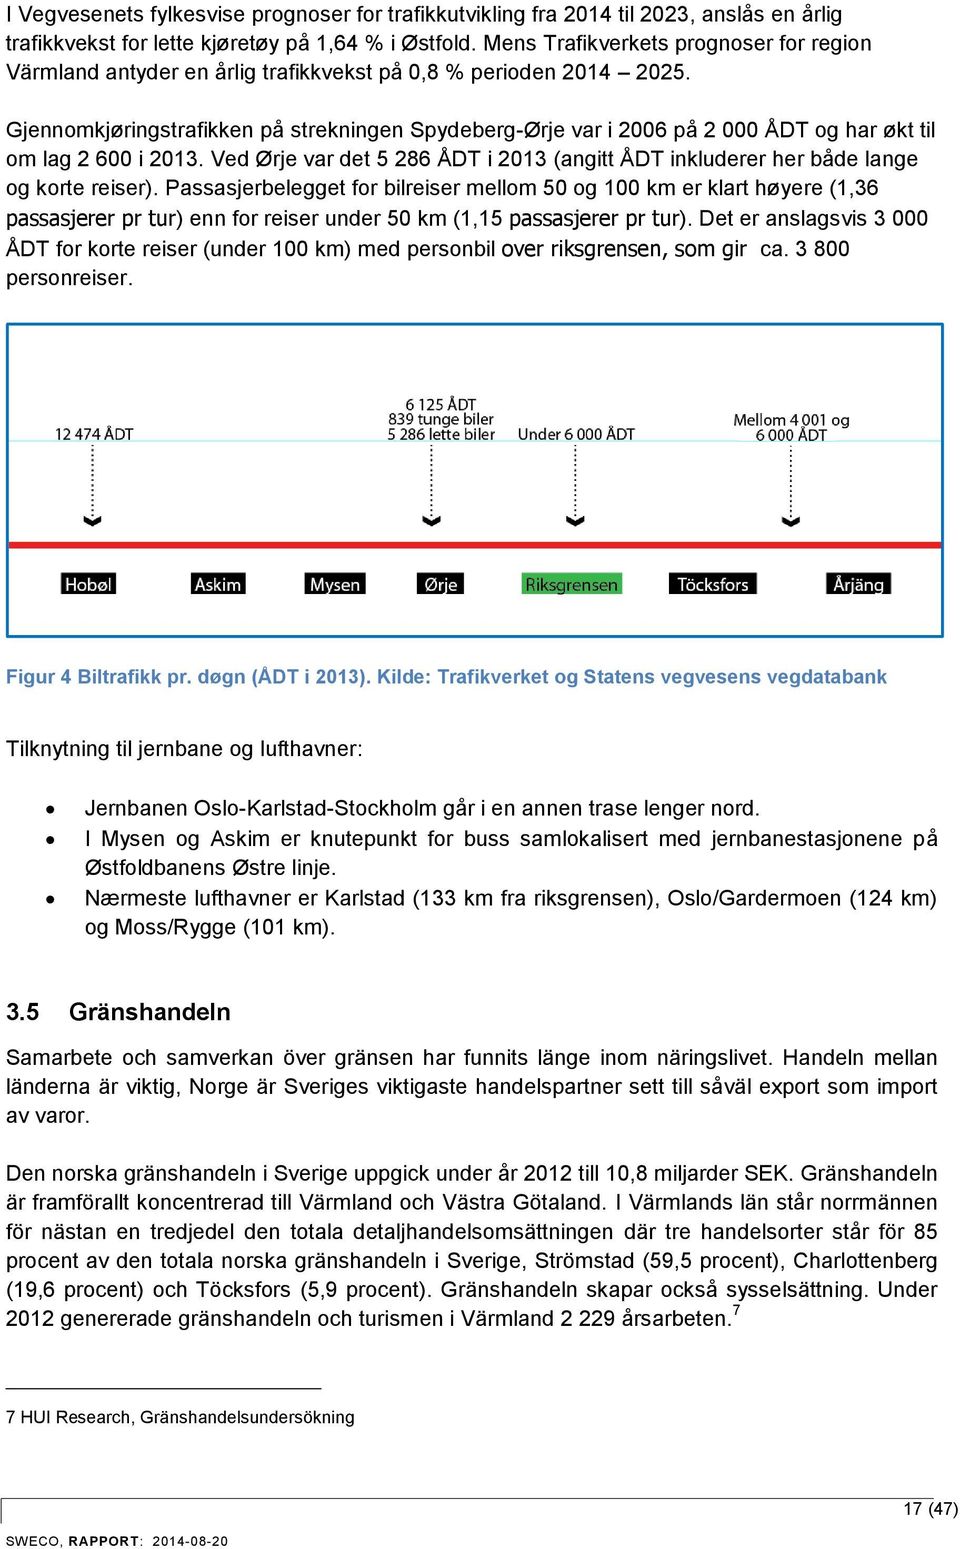 Gjennomkjøringstrafikken på strekningen Spydeberg-Ørje var i 2006 på 2 000 ÅDT og har økt til om lag 2 600 i 2013.